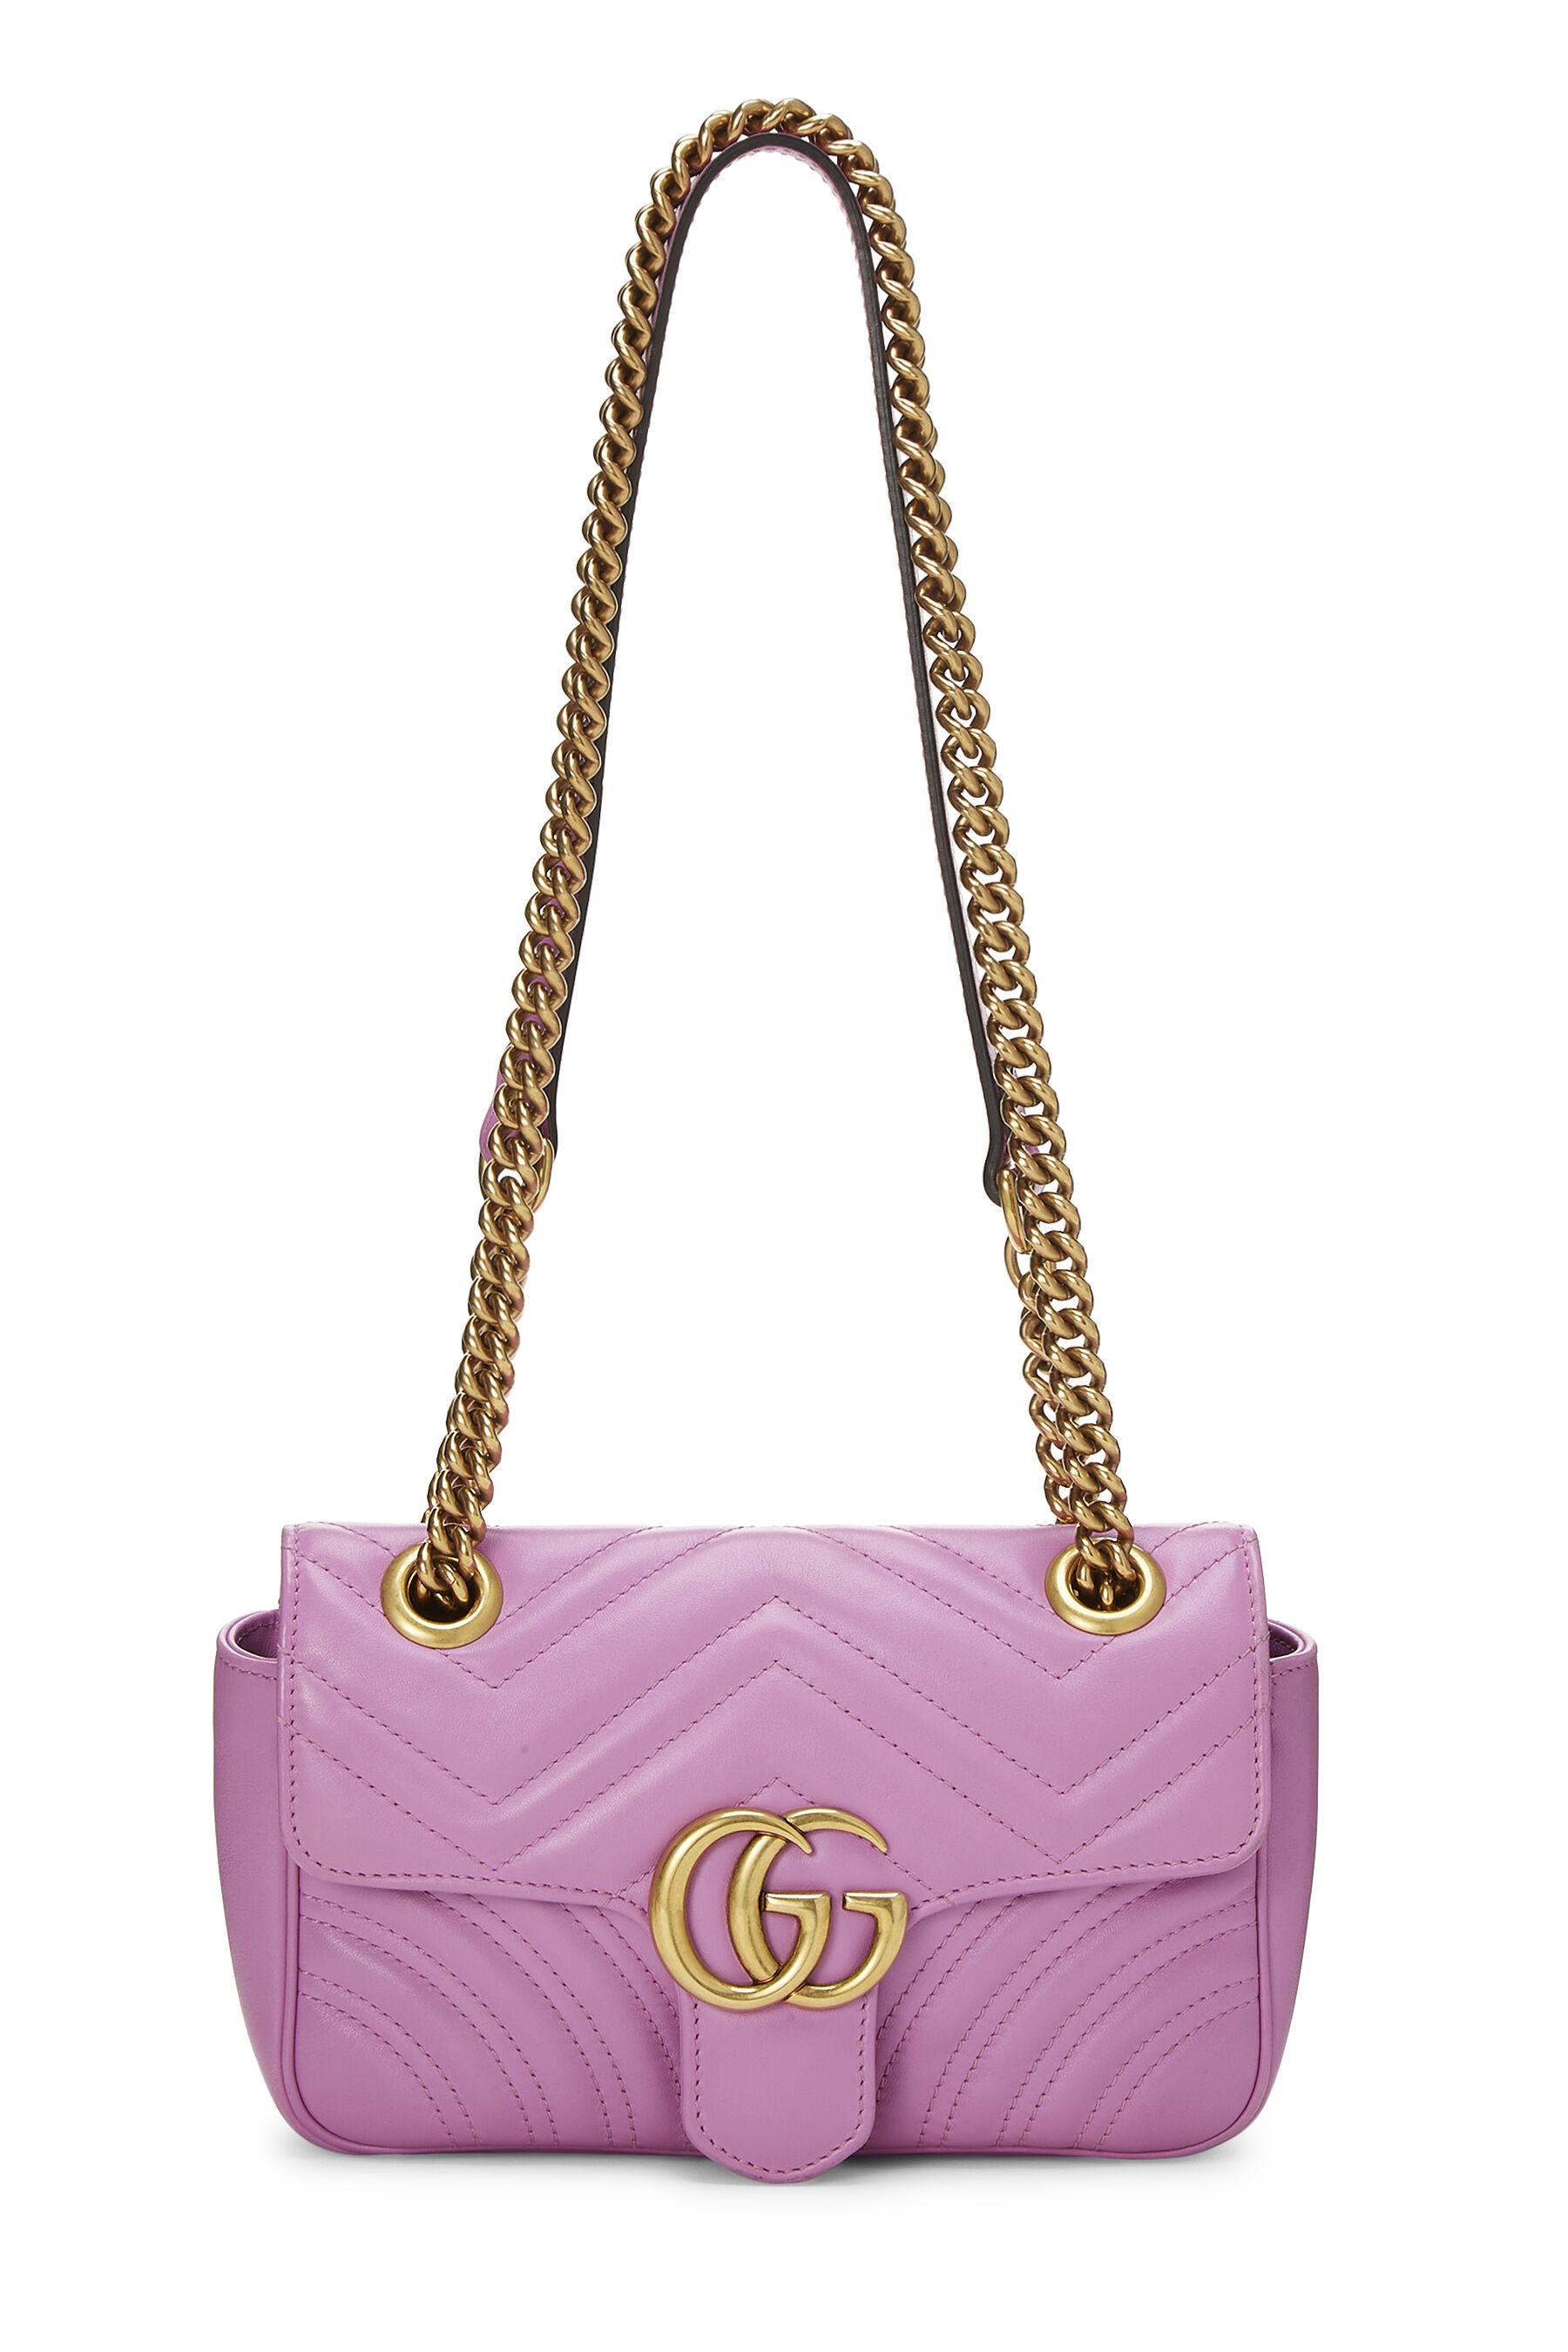 Gucci Purple Matelassé Leather Marmont Shoulder Bag Small